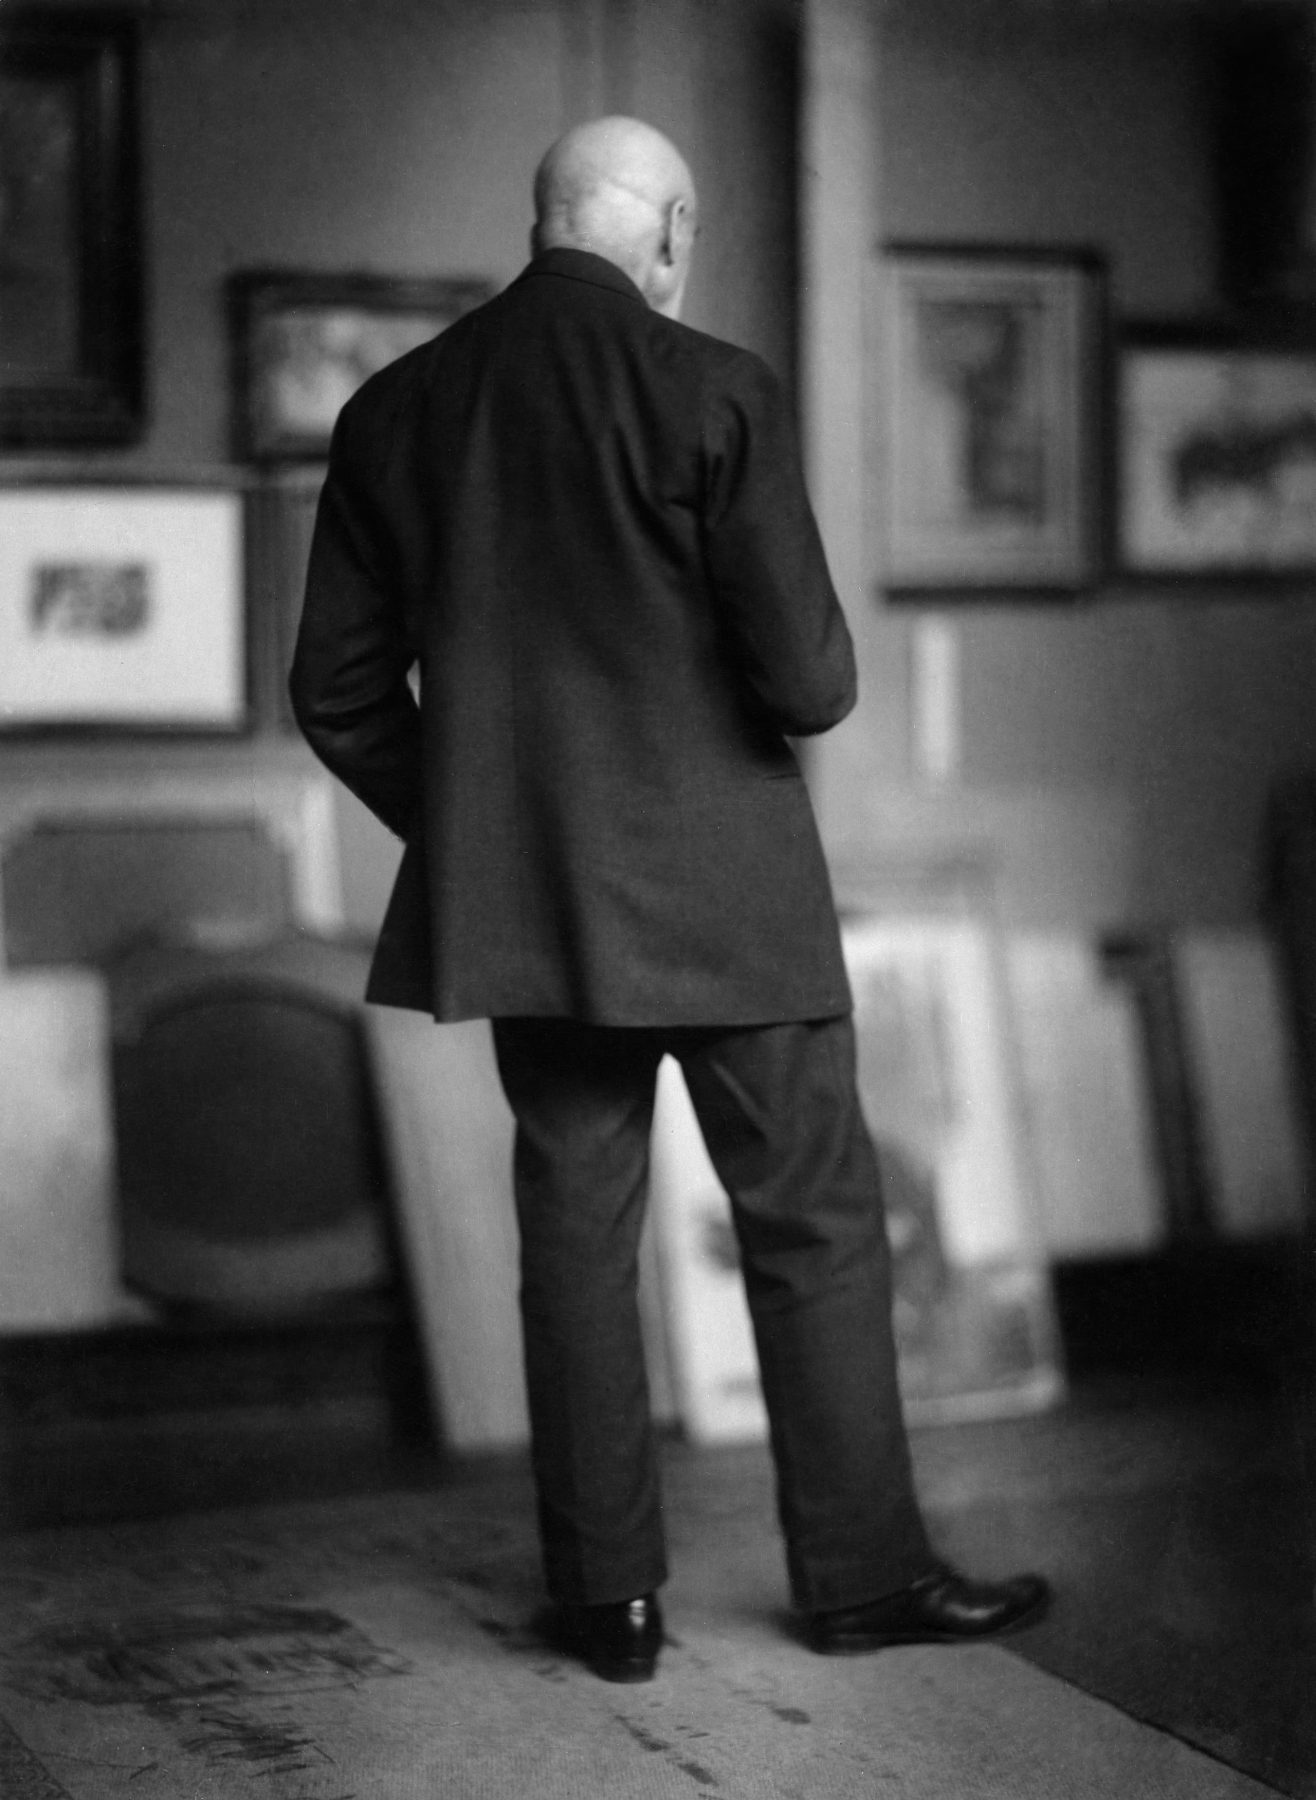 Historisches Schwarzweißfoto einer männlichen Gestalt in einem Anzug von hinten fotografiert in einem Raum mit Kunstwerken